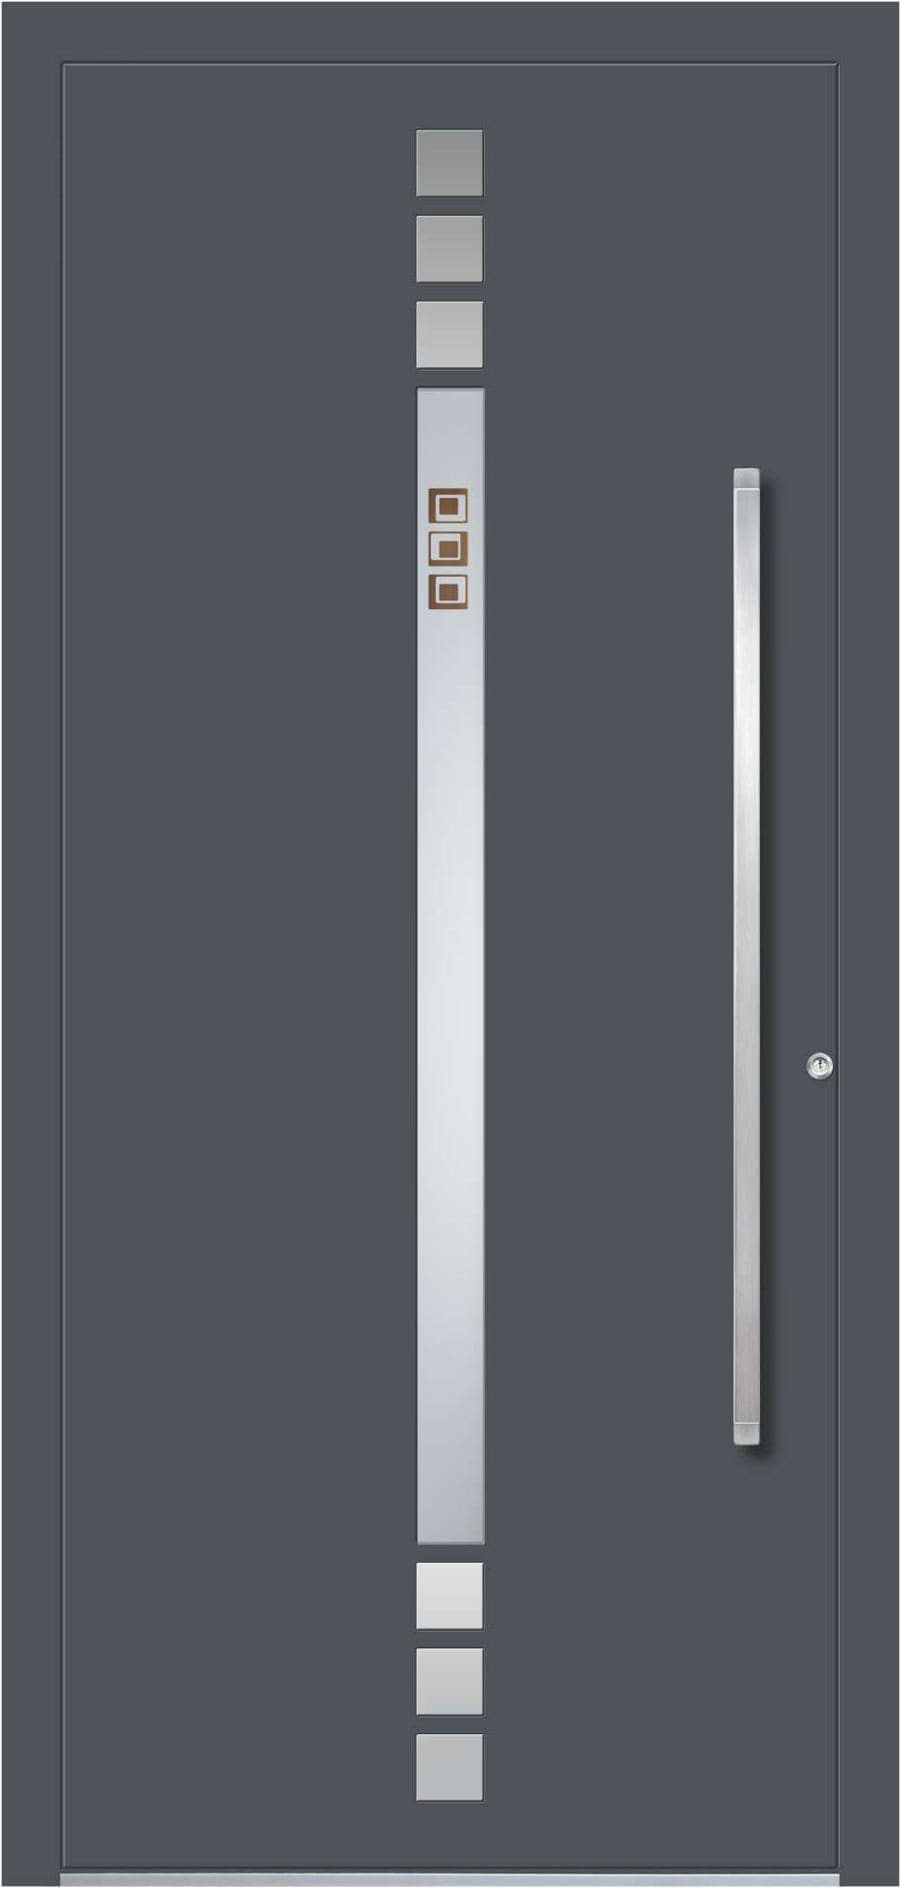 Uși intrare Aluminiu Gama Elite - model BI-13E